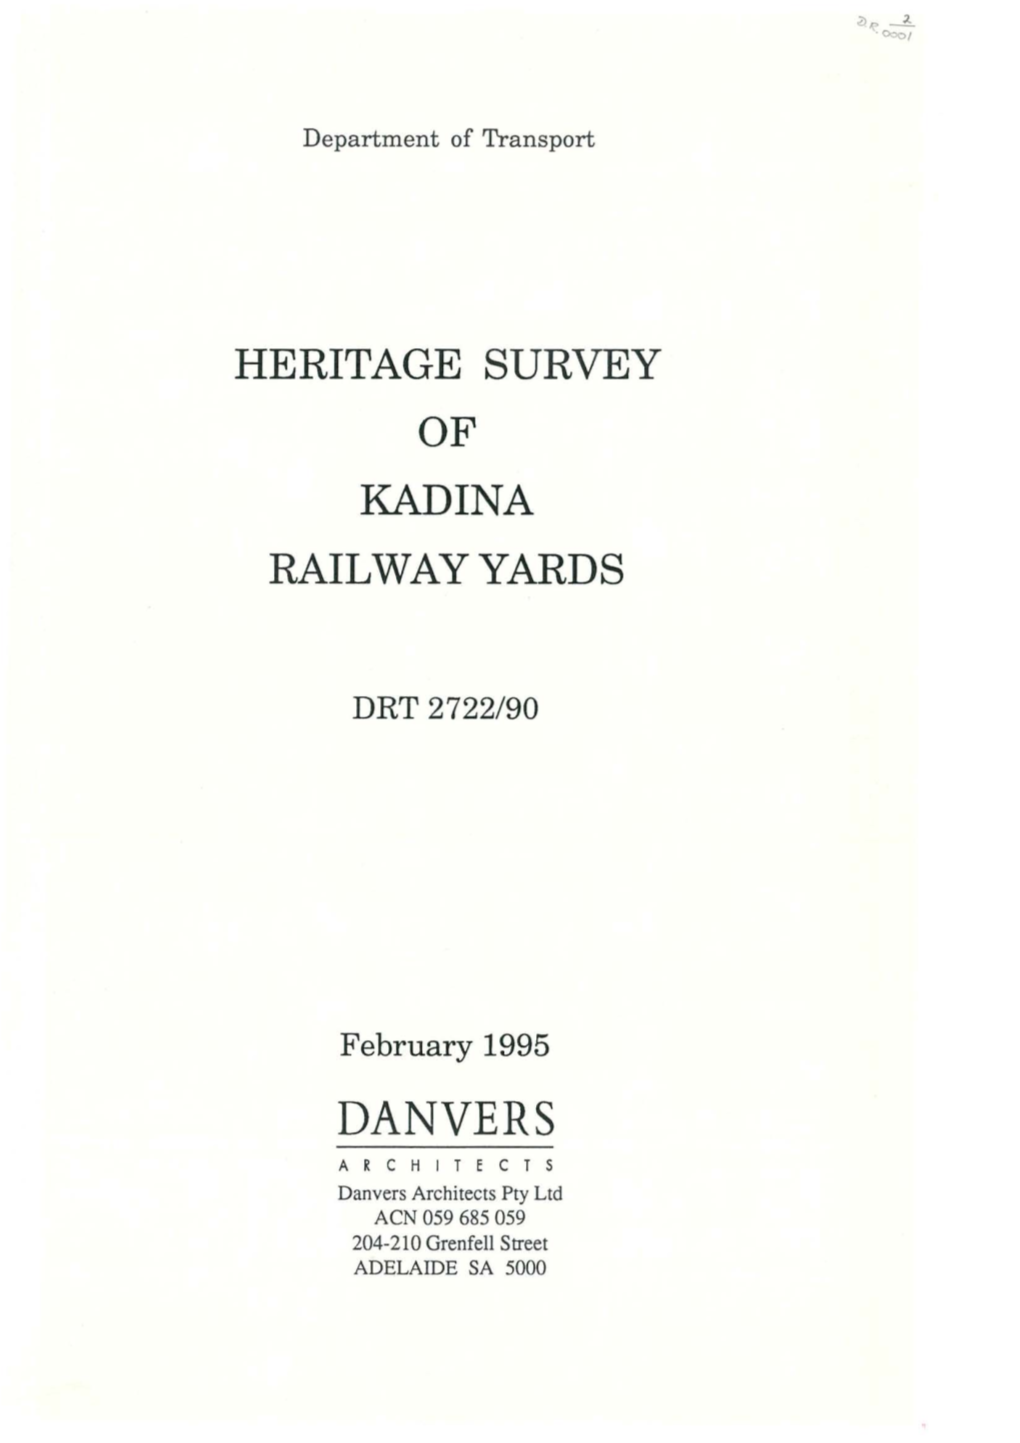 Kadina Railway Yards Heritage Survey (1995)